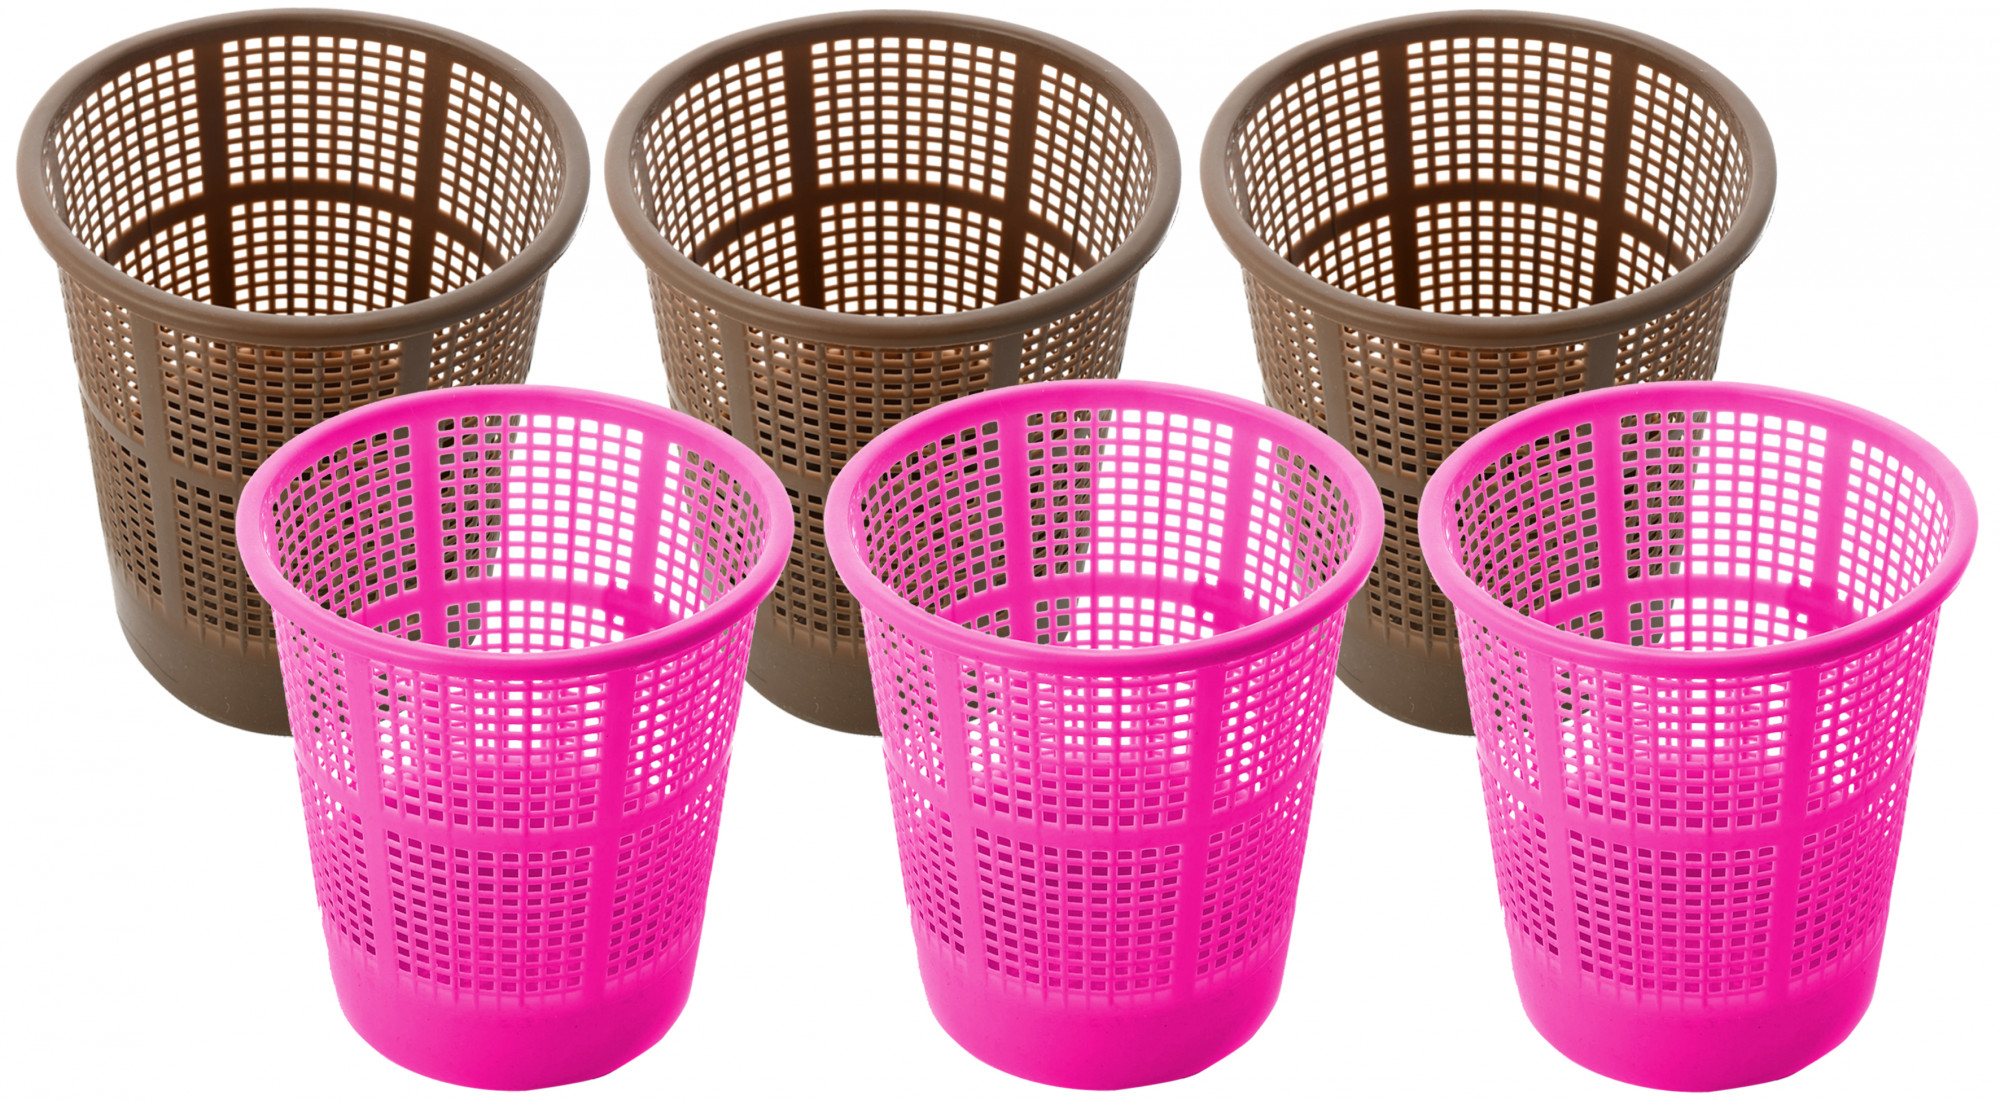 Kuber Industries Plastic Mesh Dustbin Garbage Bin for Office use, School, Bedroom,Kids Room, Home, Multi Purpose,5 Liters (Brown & Pink)-KUBMART260